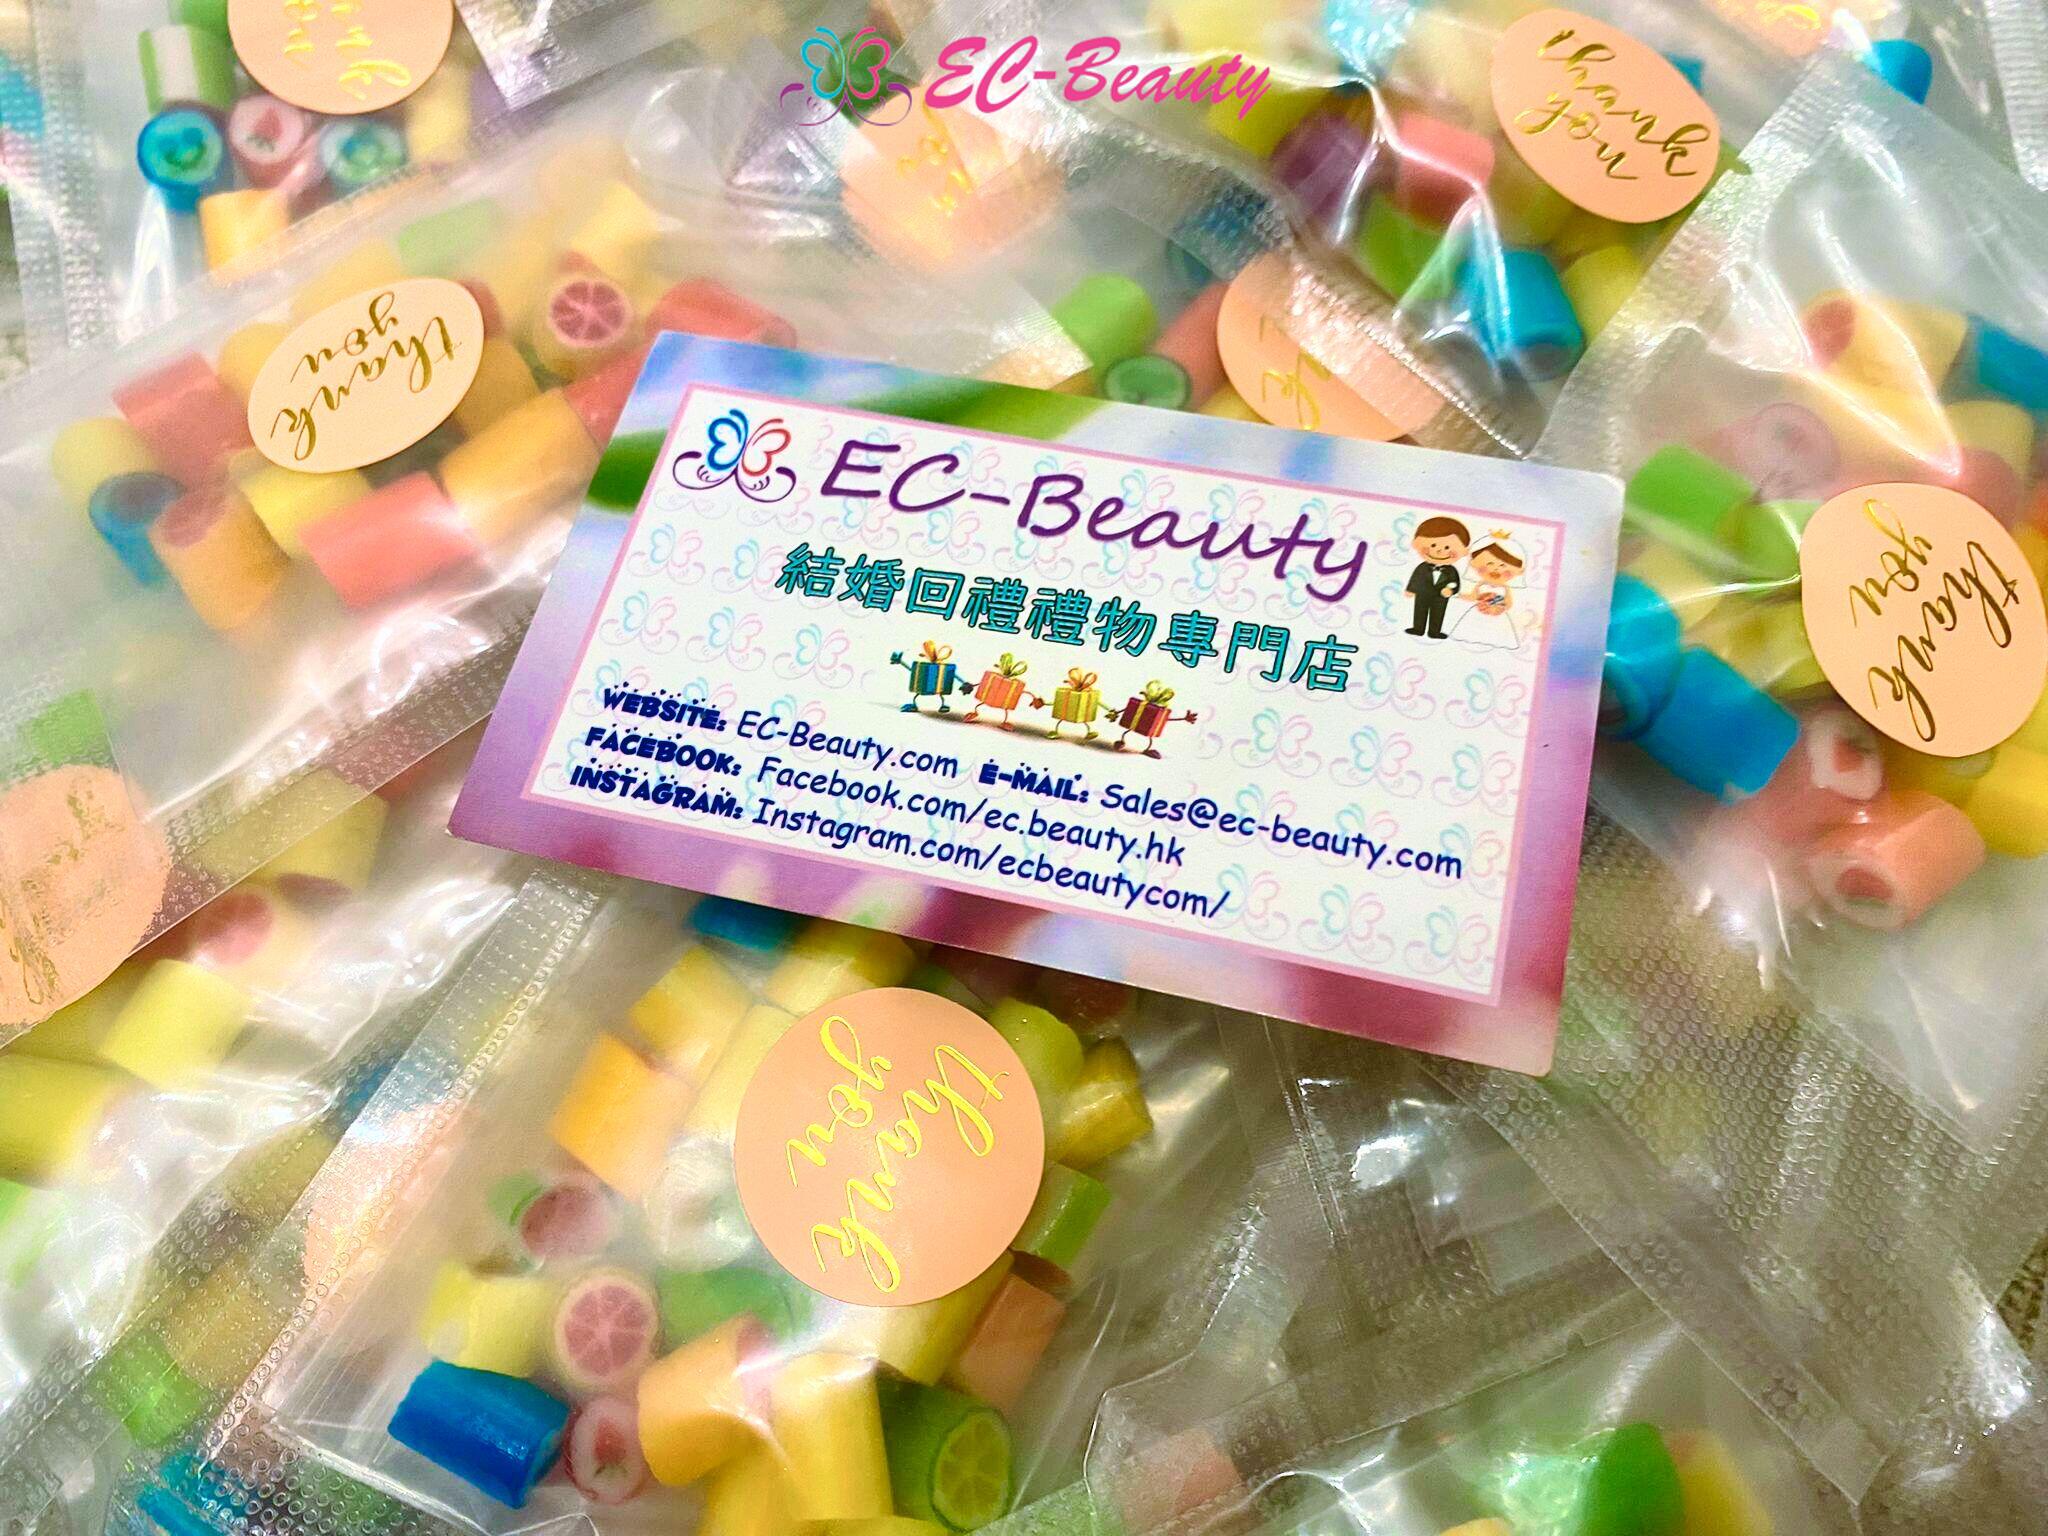 EC-Beauty 結婚回禮禮物 手工切片糖